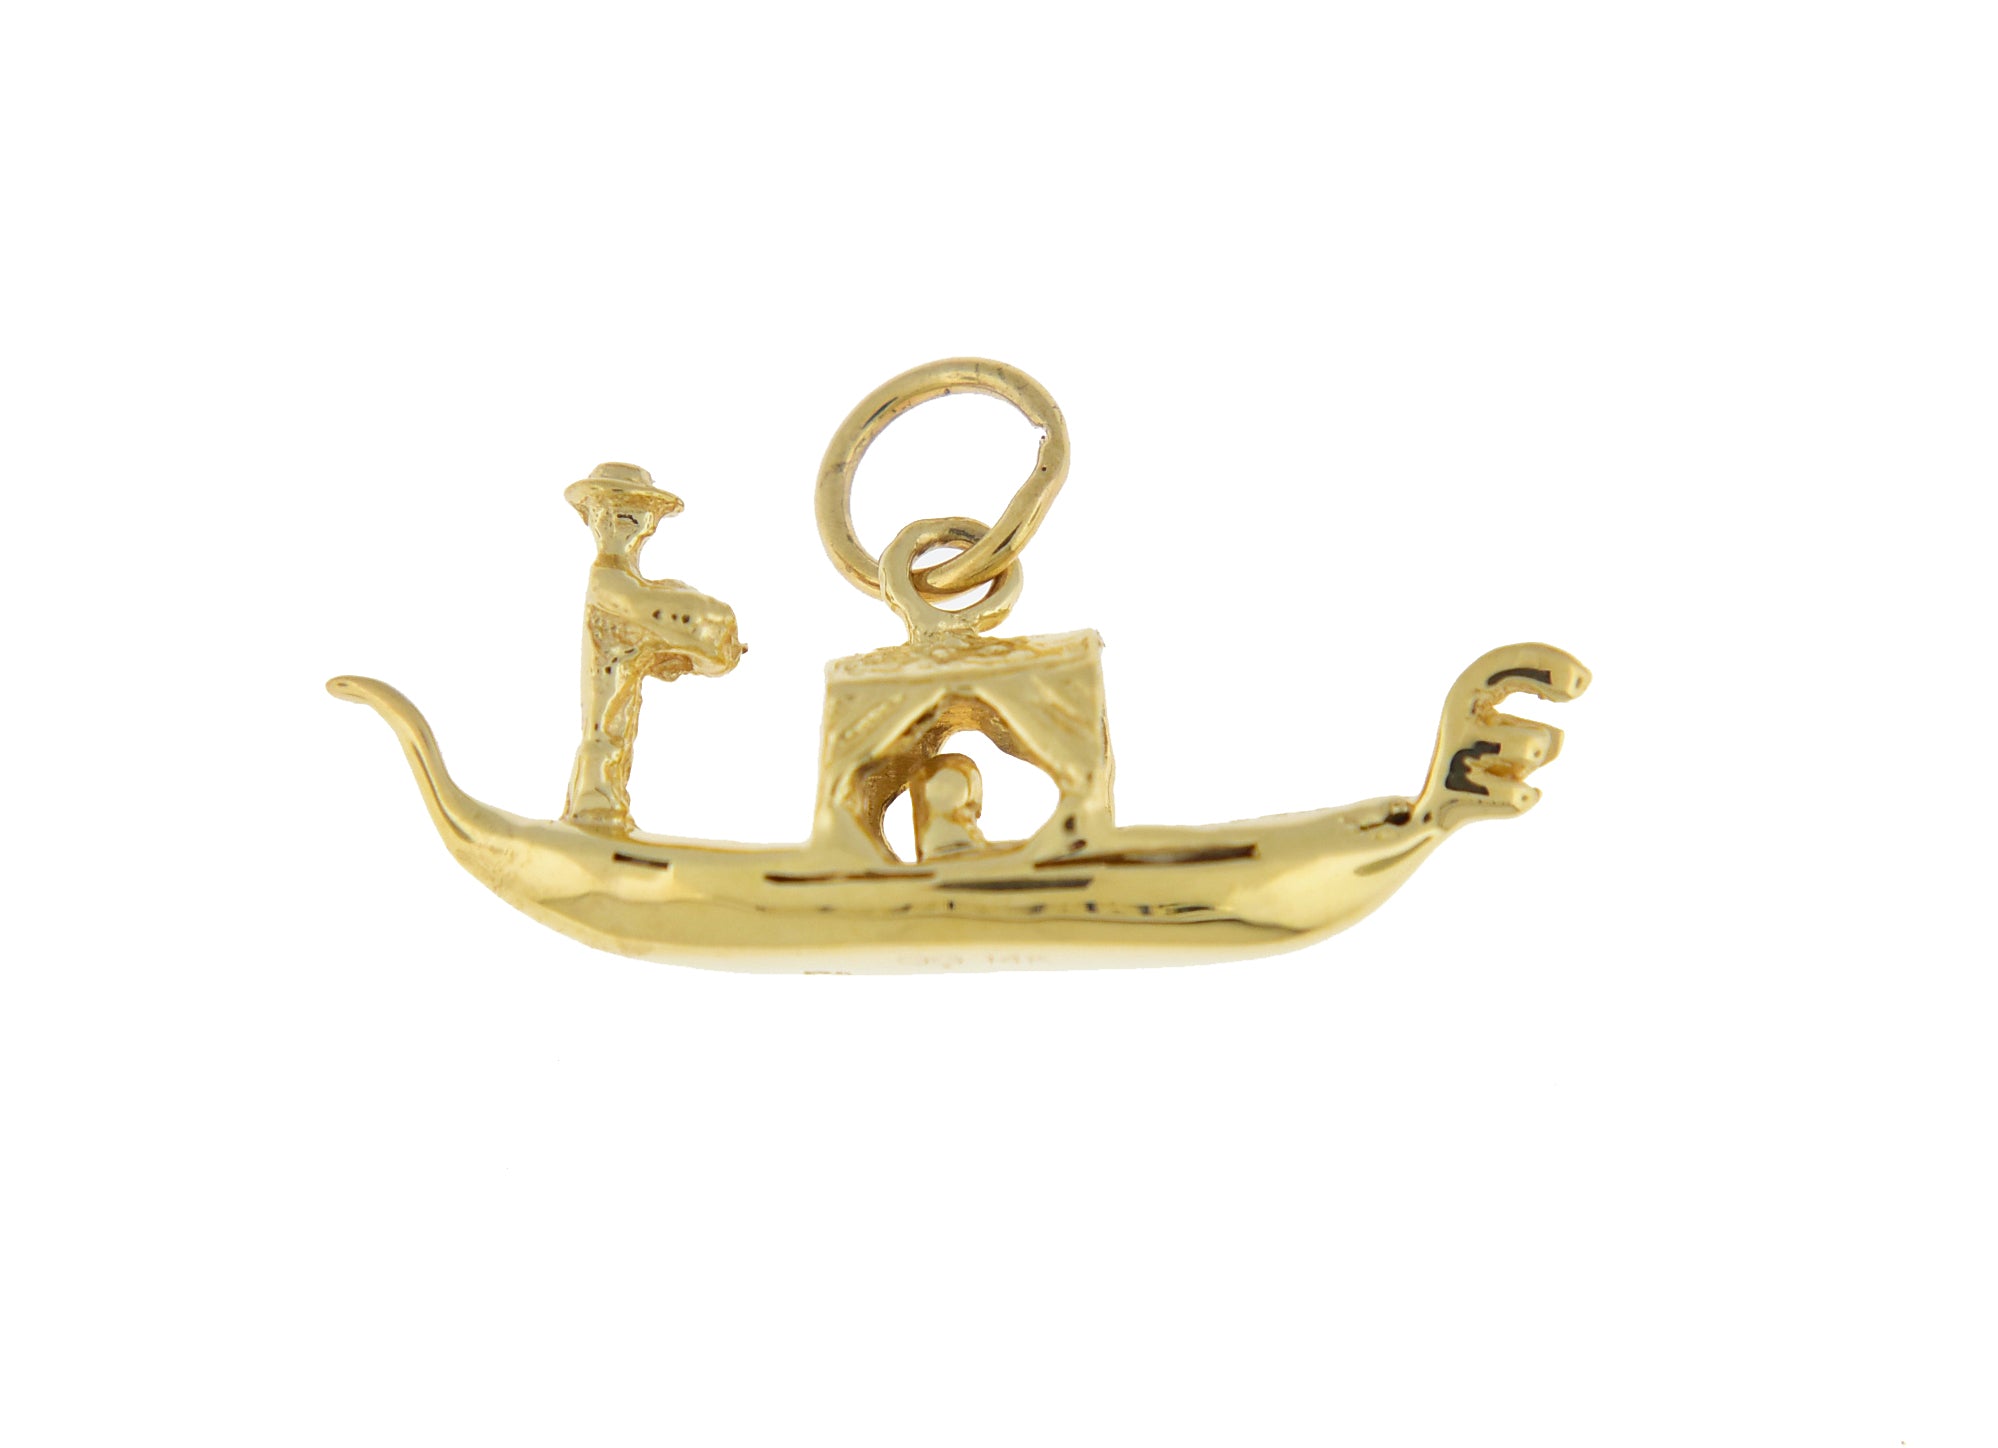 14k Yellow Gold Venetian Gondola 3D Pendant Charm - [cklinternational]